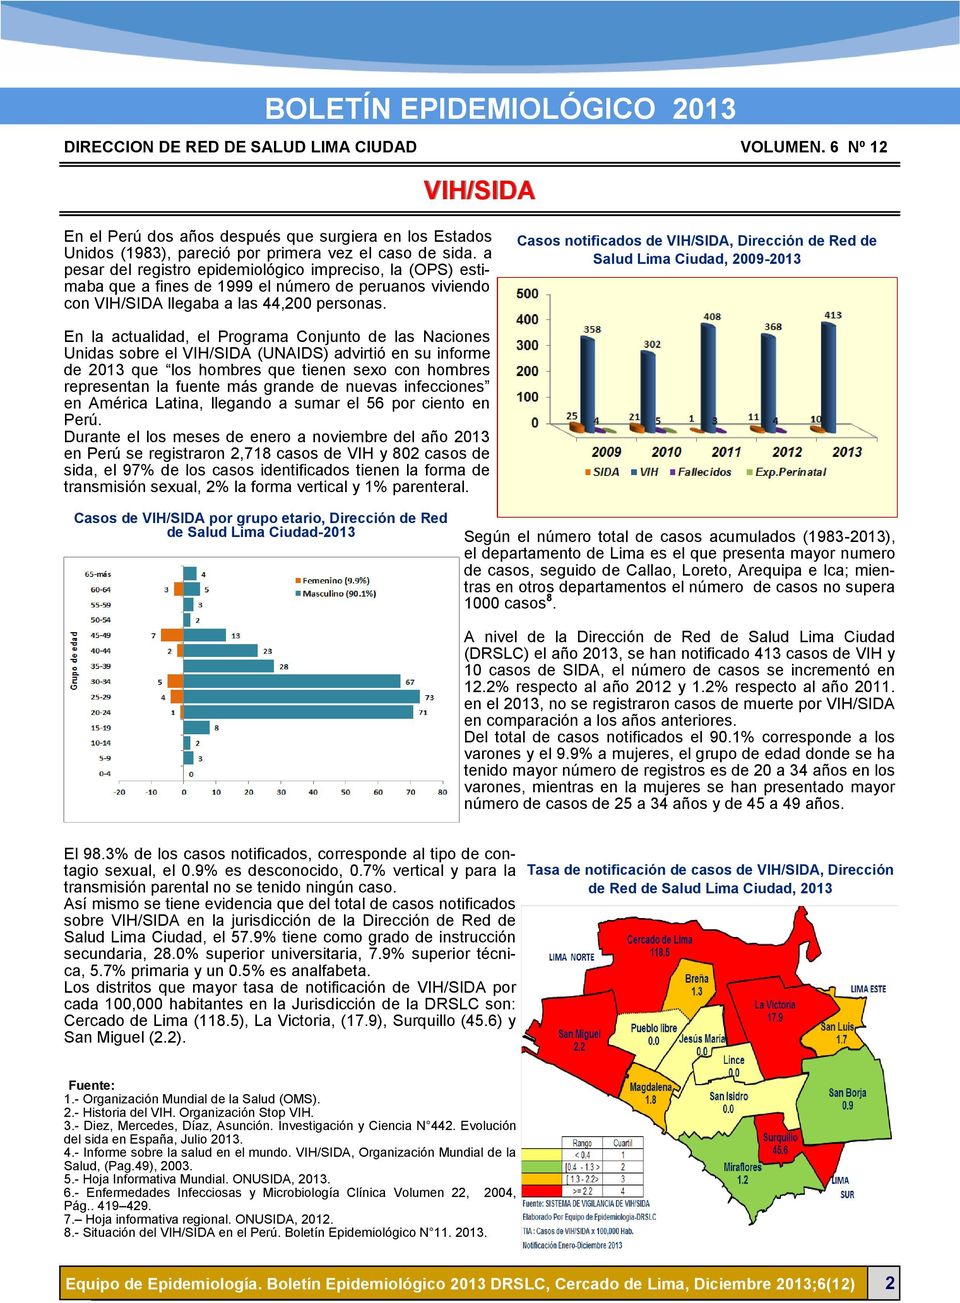 Casos notificados de VIH/SIDA, Dirección de Red de Salud Lima Ciudad, 2009-2013 En la actualidad, el Programa Conjunto de las Naciones Unidas sobre el VIH/SIDA (UNAIDS) advirtió en su informe de 2013